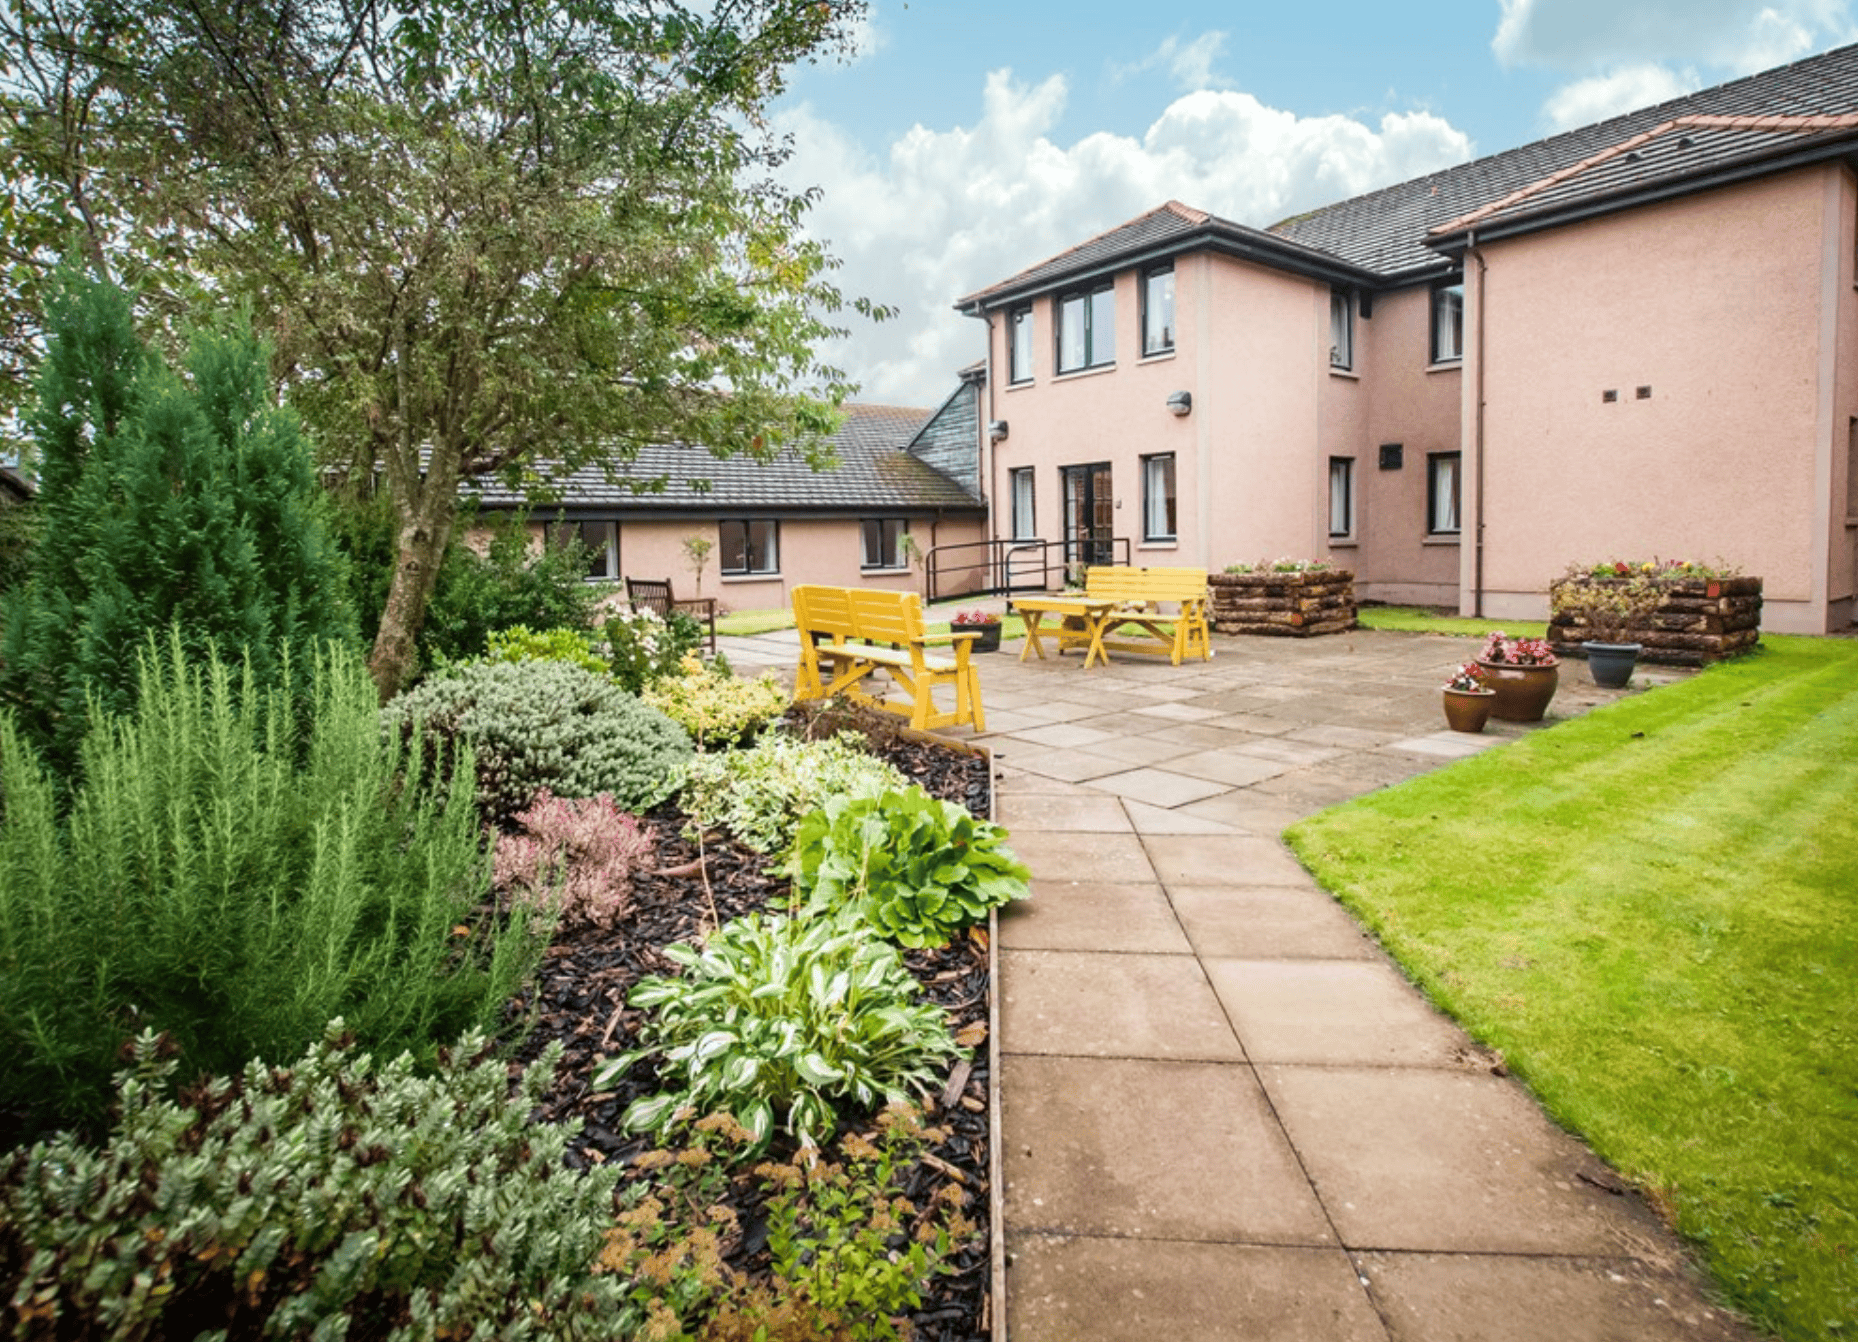 Garden at Auchtercrag House/Auchmacoy Lodge Care Home, Ellon, Aberdeenshire